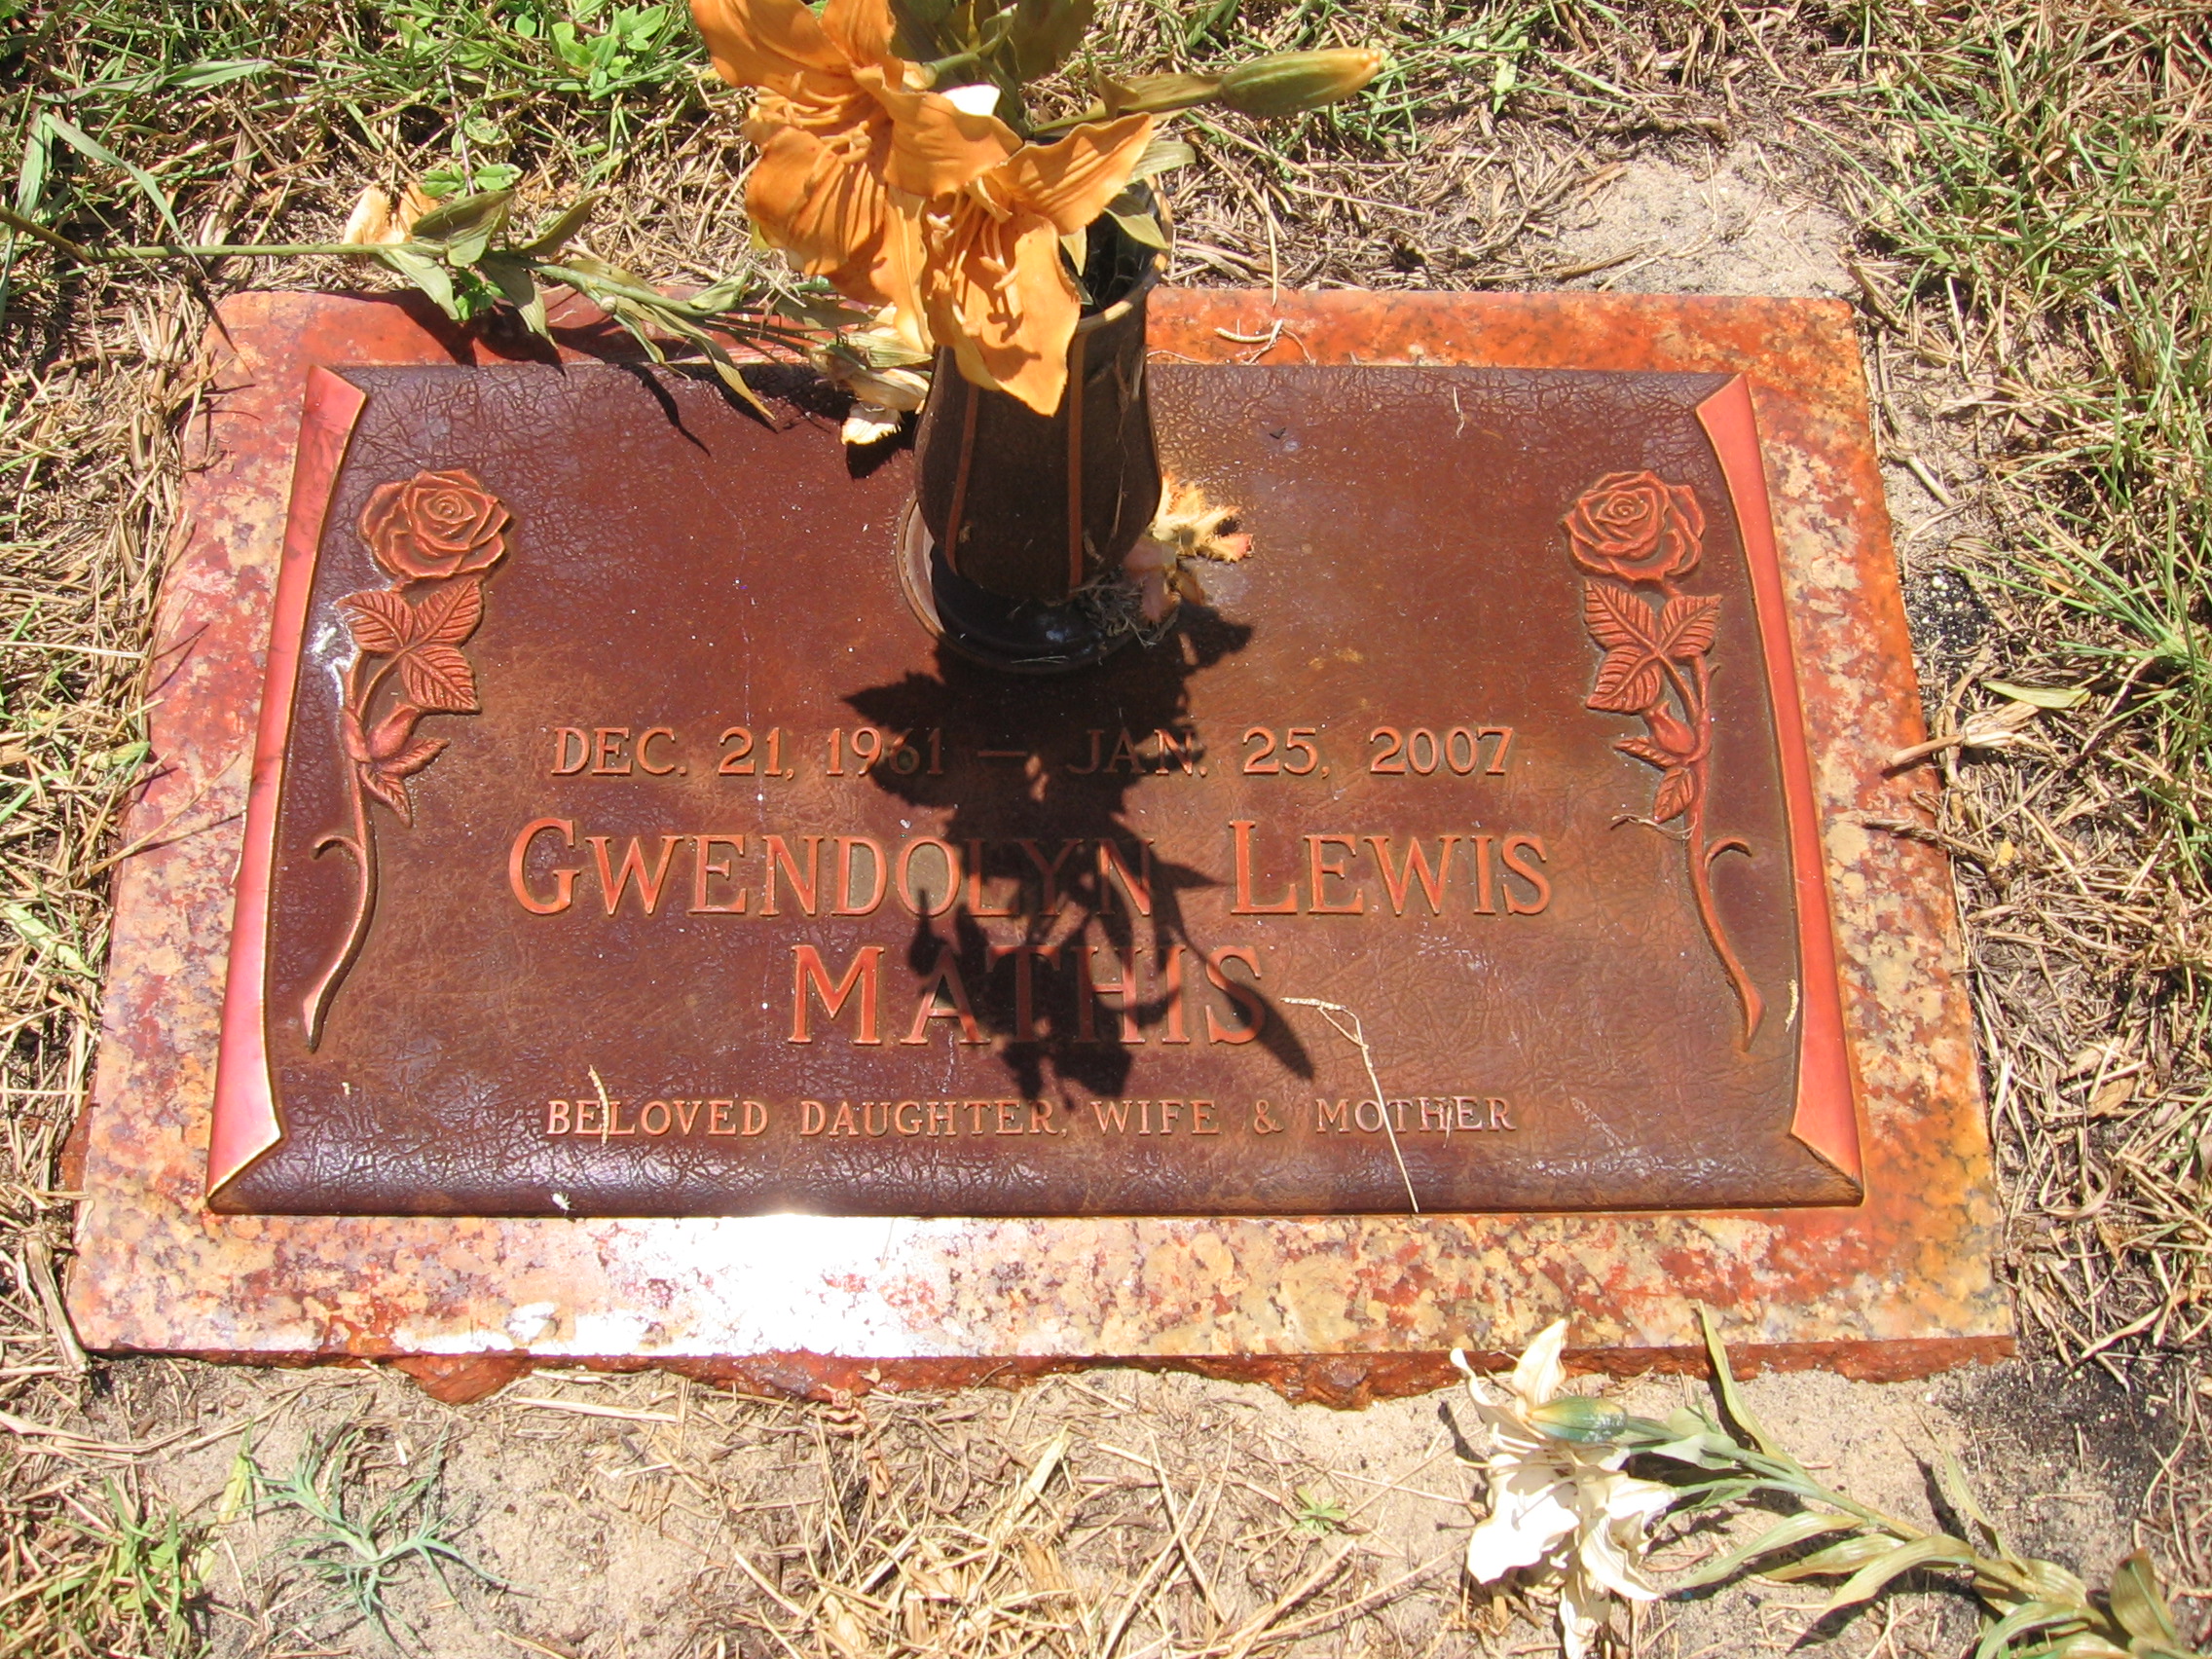 Gwendolyn Lewis Mathis